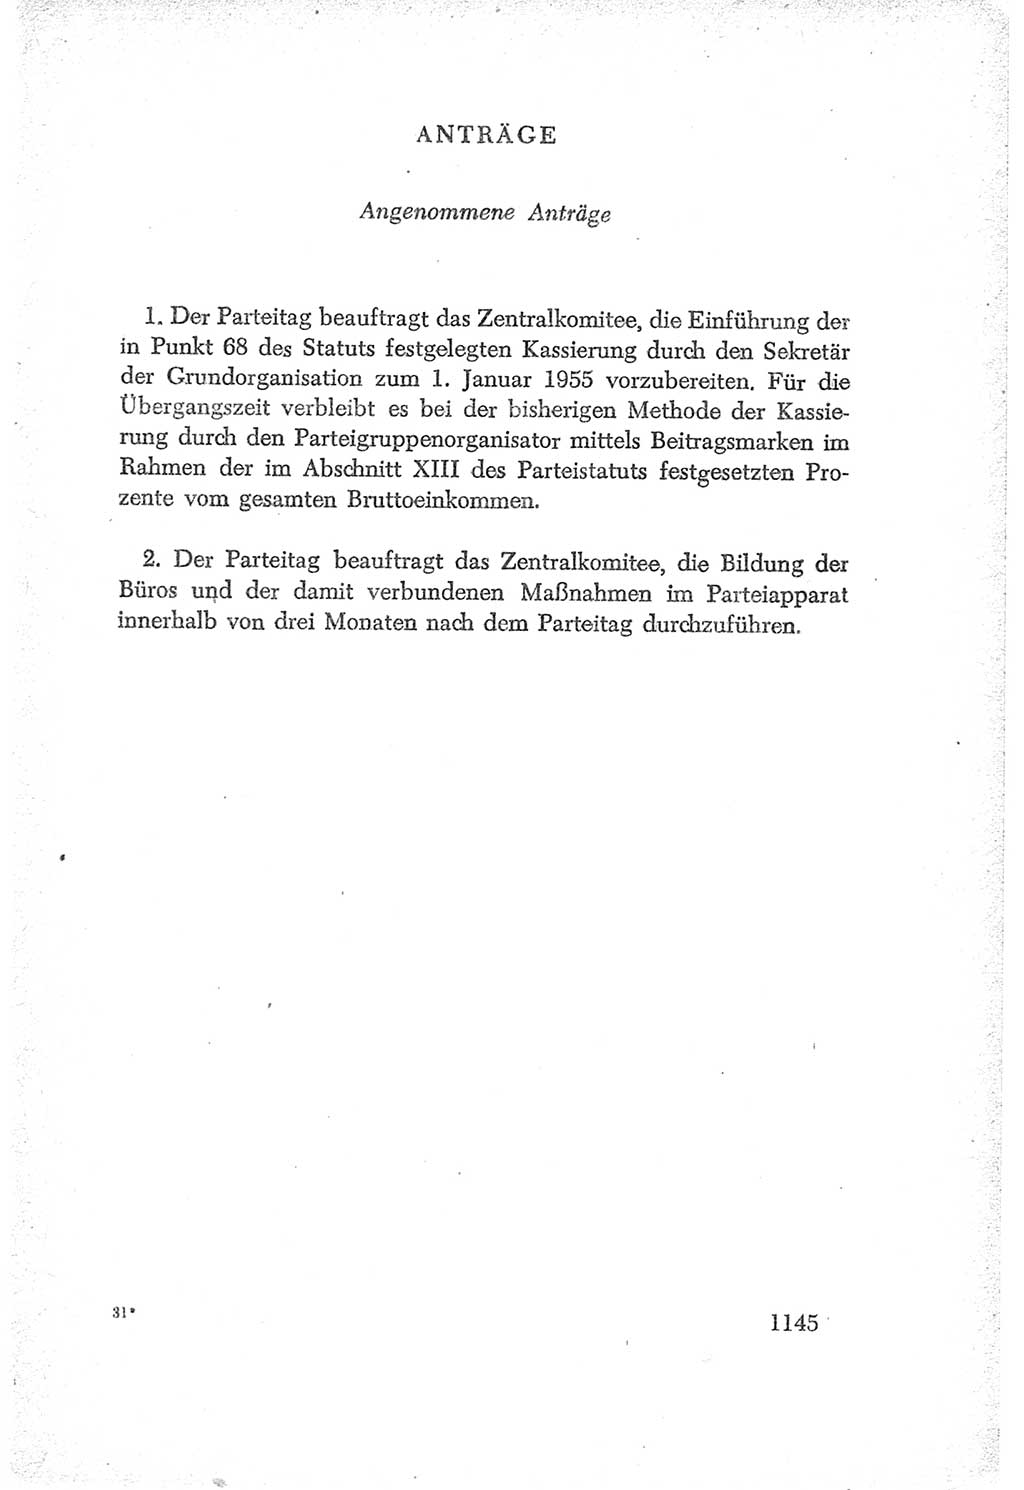 Protokoll der Verhandlungen des Ⅳ. Parteitages der Sozialistischen Einheitspartei Deutschlands (SED) [Deutsche Demokratische Republik (DDR)] 1954, Seite 1145